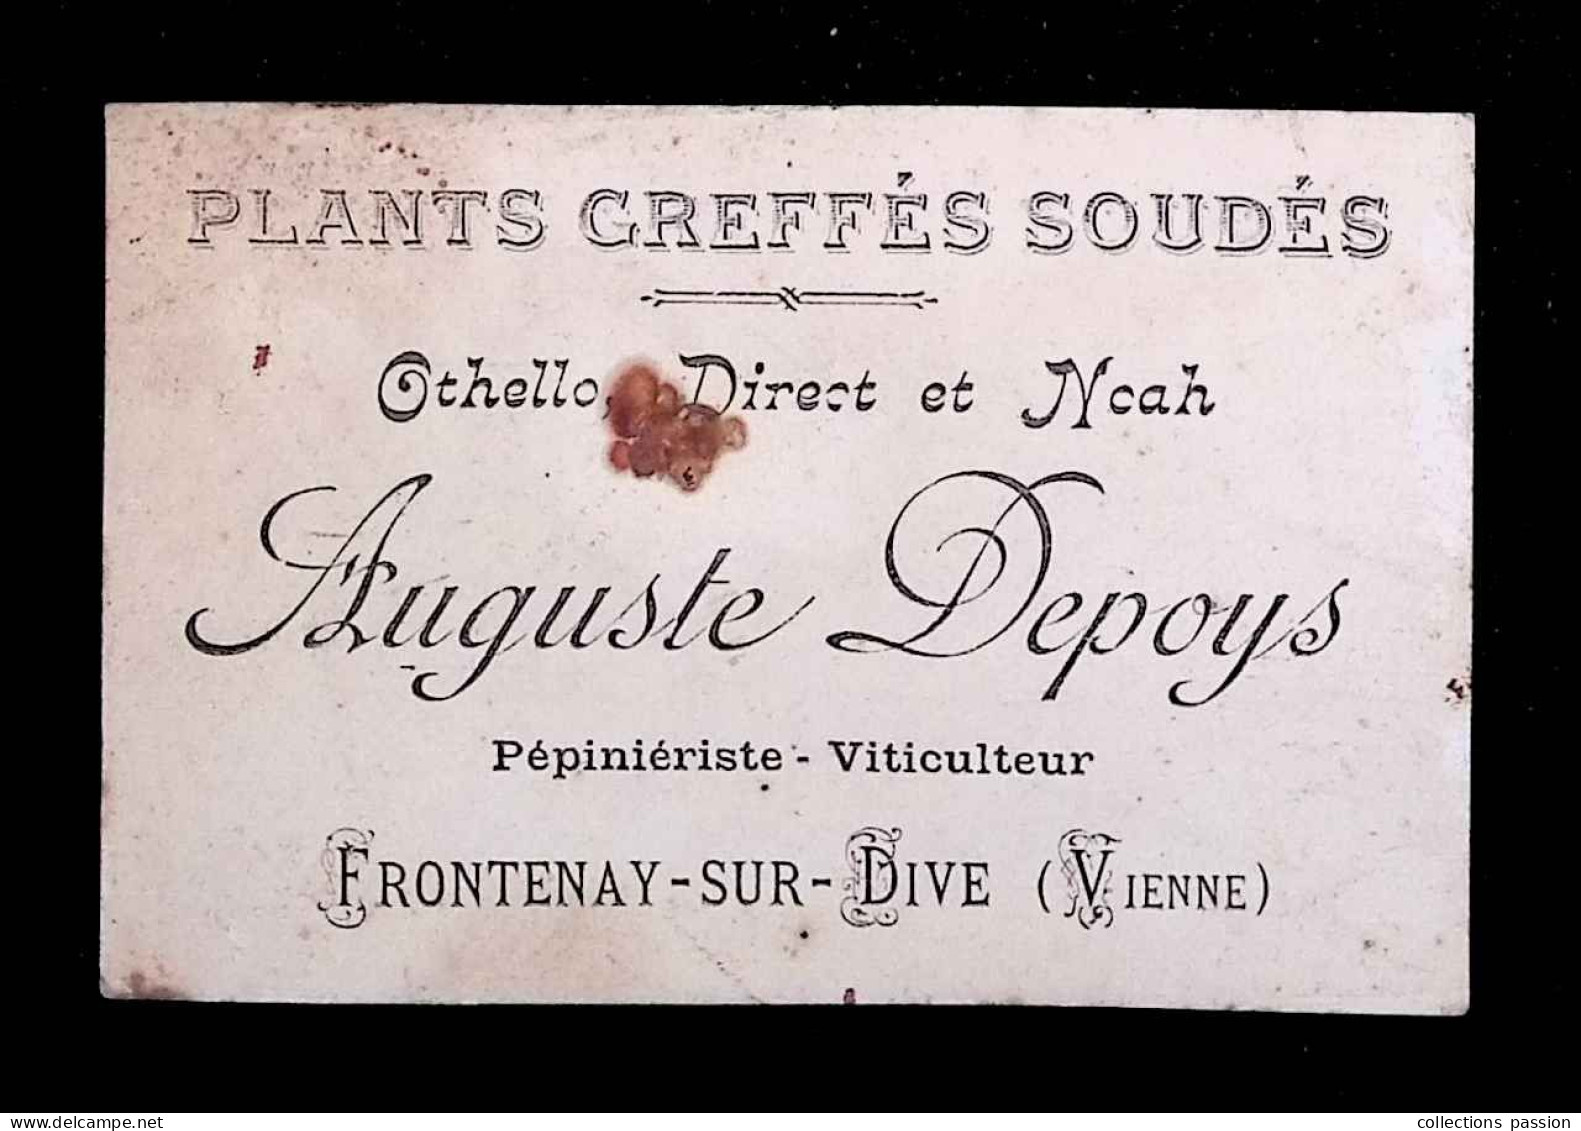 Carte De Visite, Plants Greffés Soudés, Auguste Depoys, Pépinièriste , Viticulteur, 86, Vienne, Frontenay Sur Dive - Cartoncini Da Visita